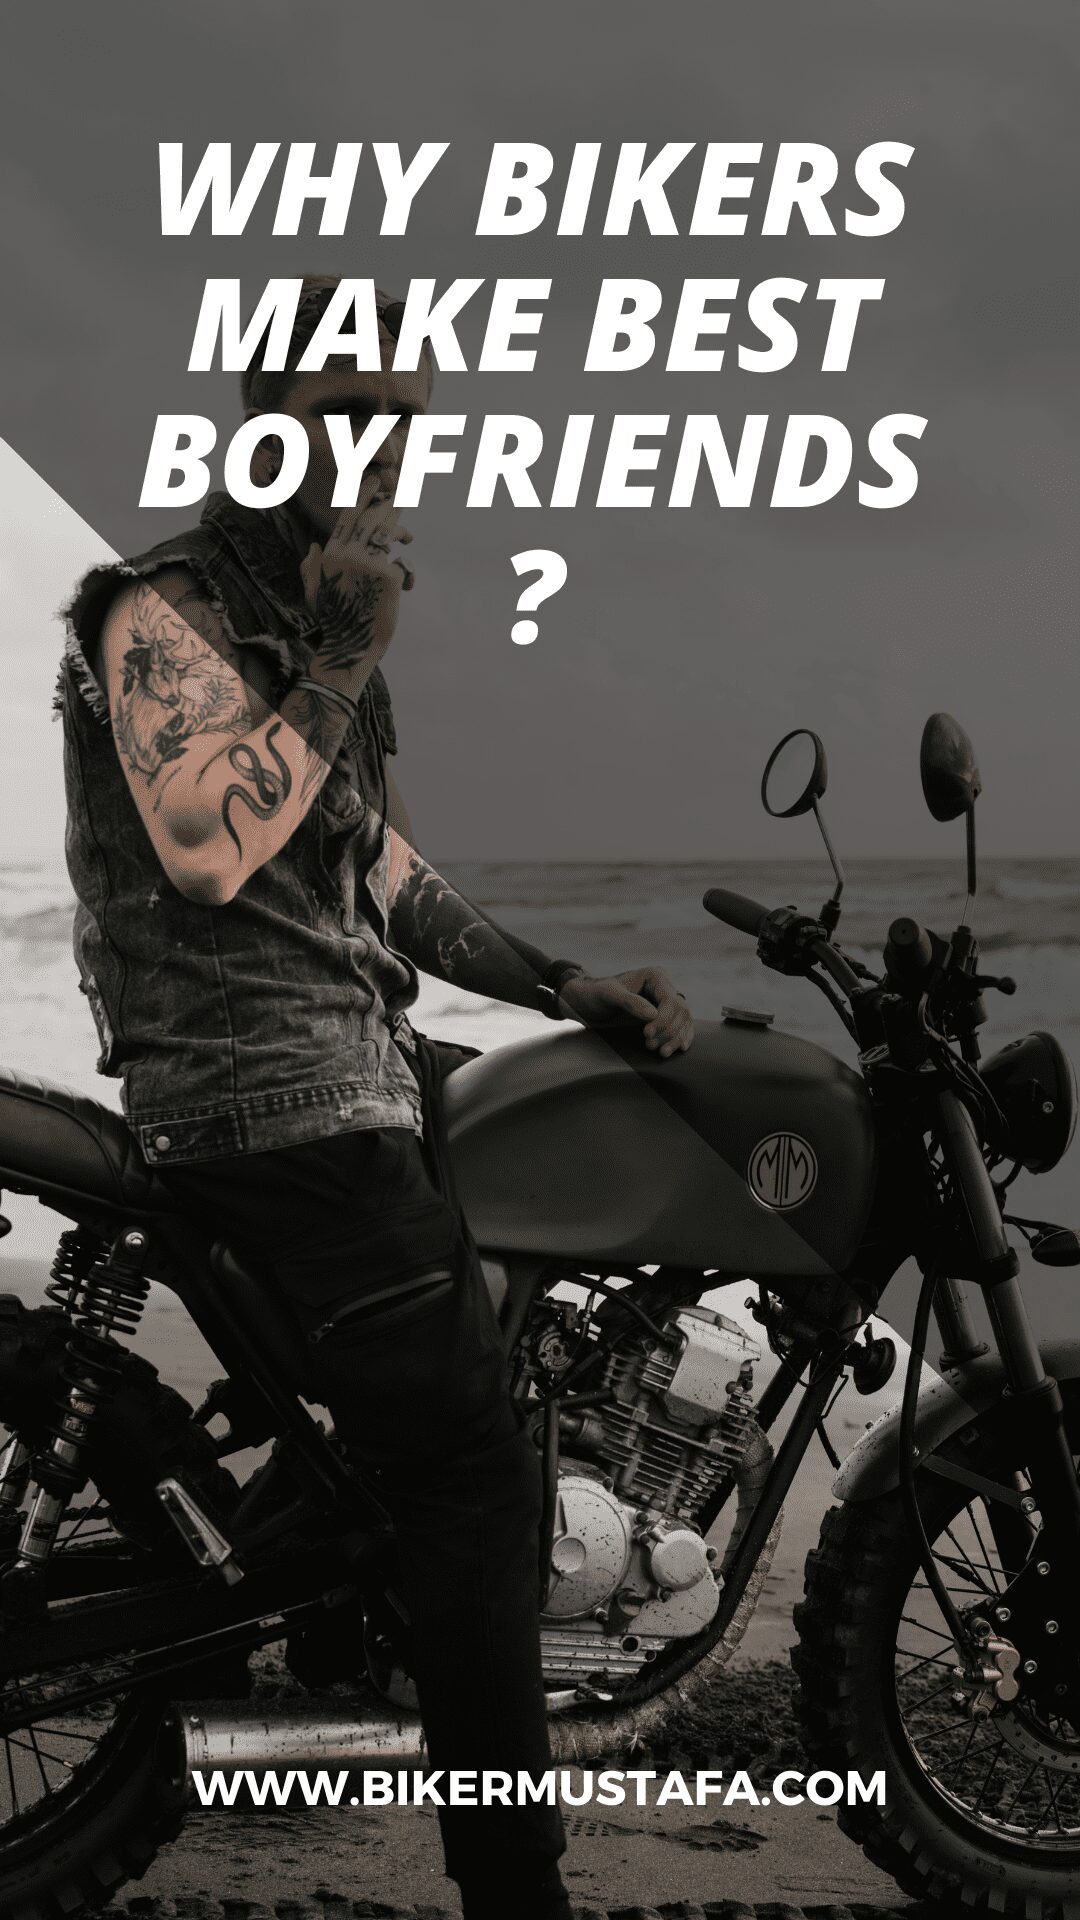 Why Bikers Make Best Boyfriends?